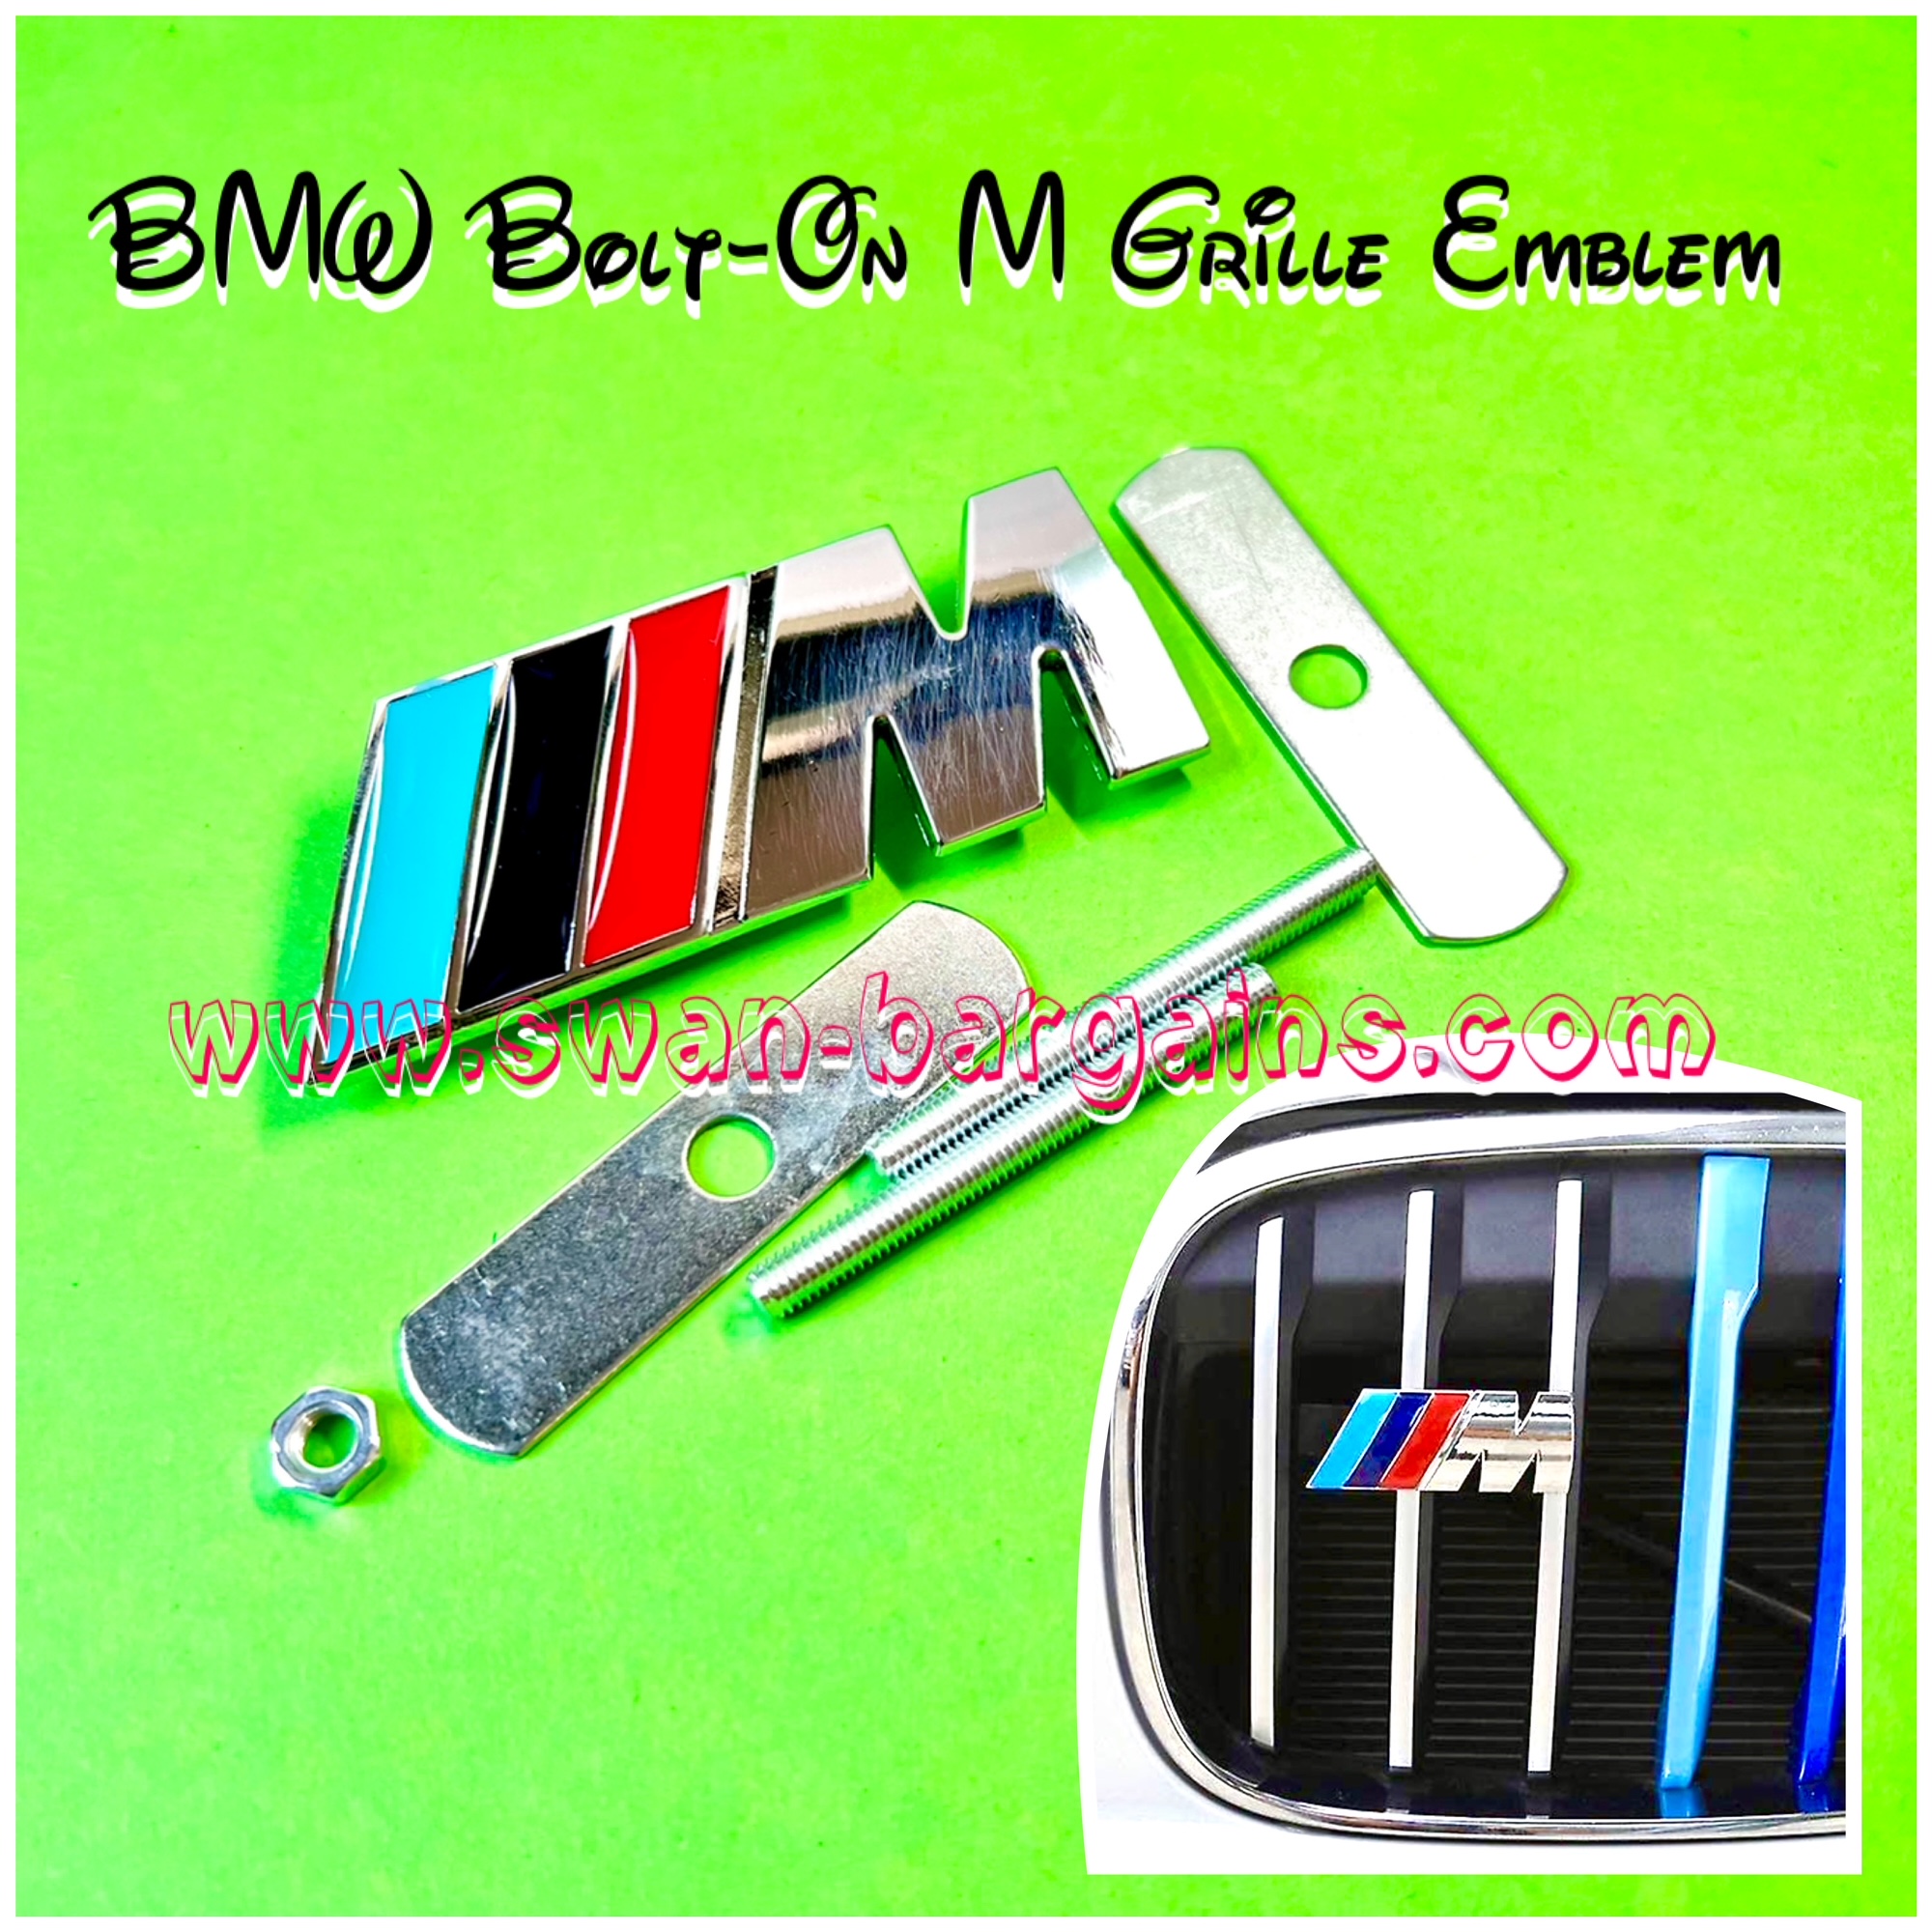 BMW M Power Grille Emblem Singapore - Classic M Stripes Design